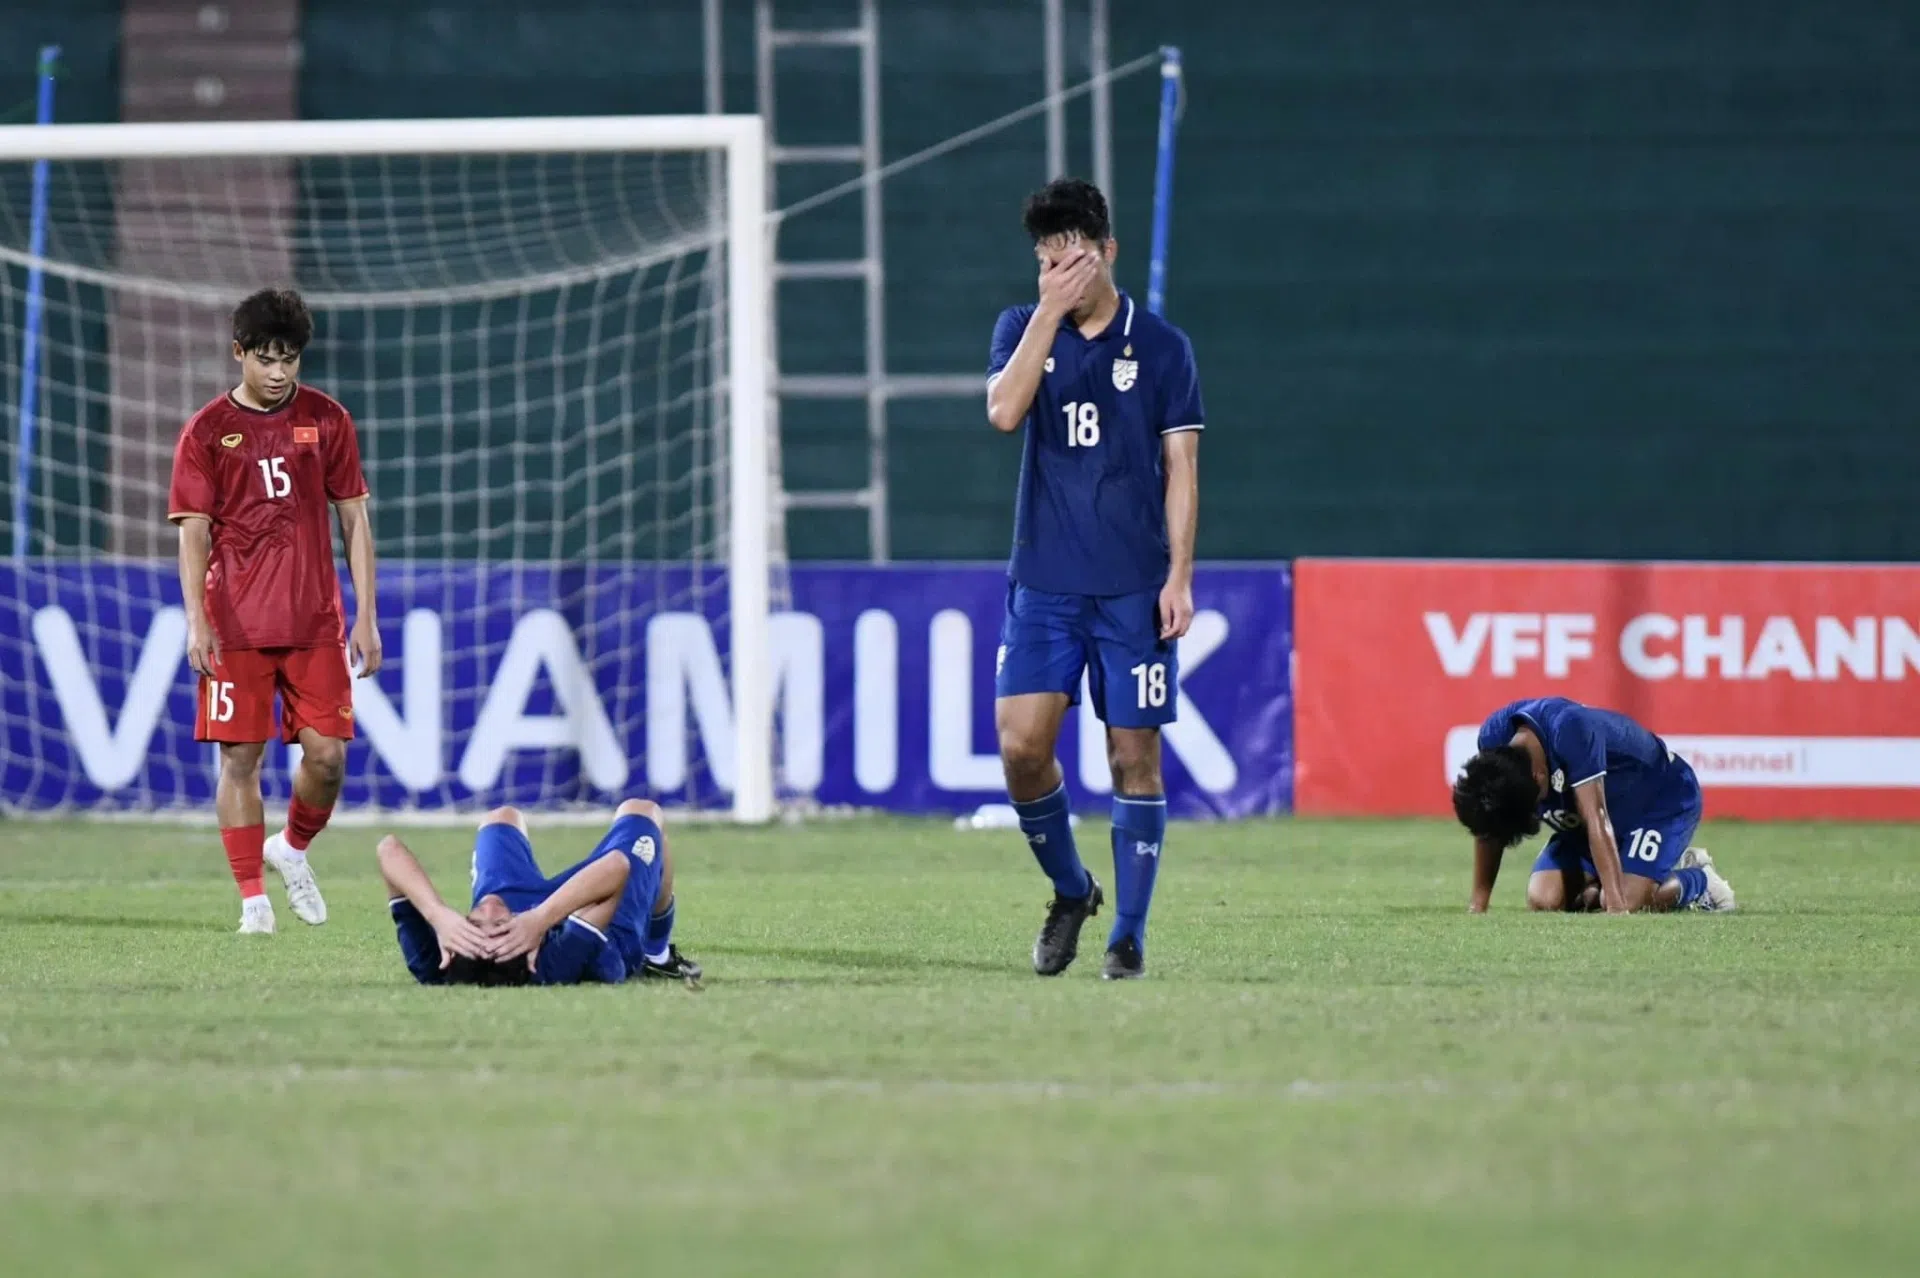 Cầu thủ Thái Lan khóc như mưa sau trận thua U17 Việt Nam 200122